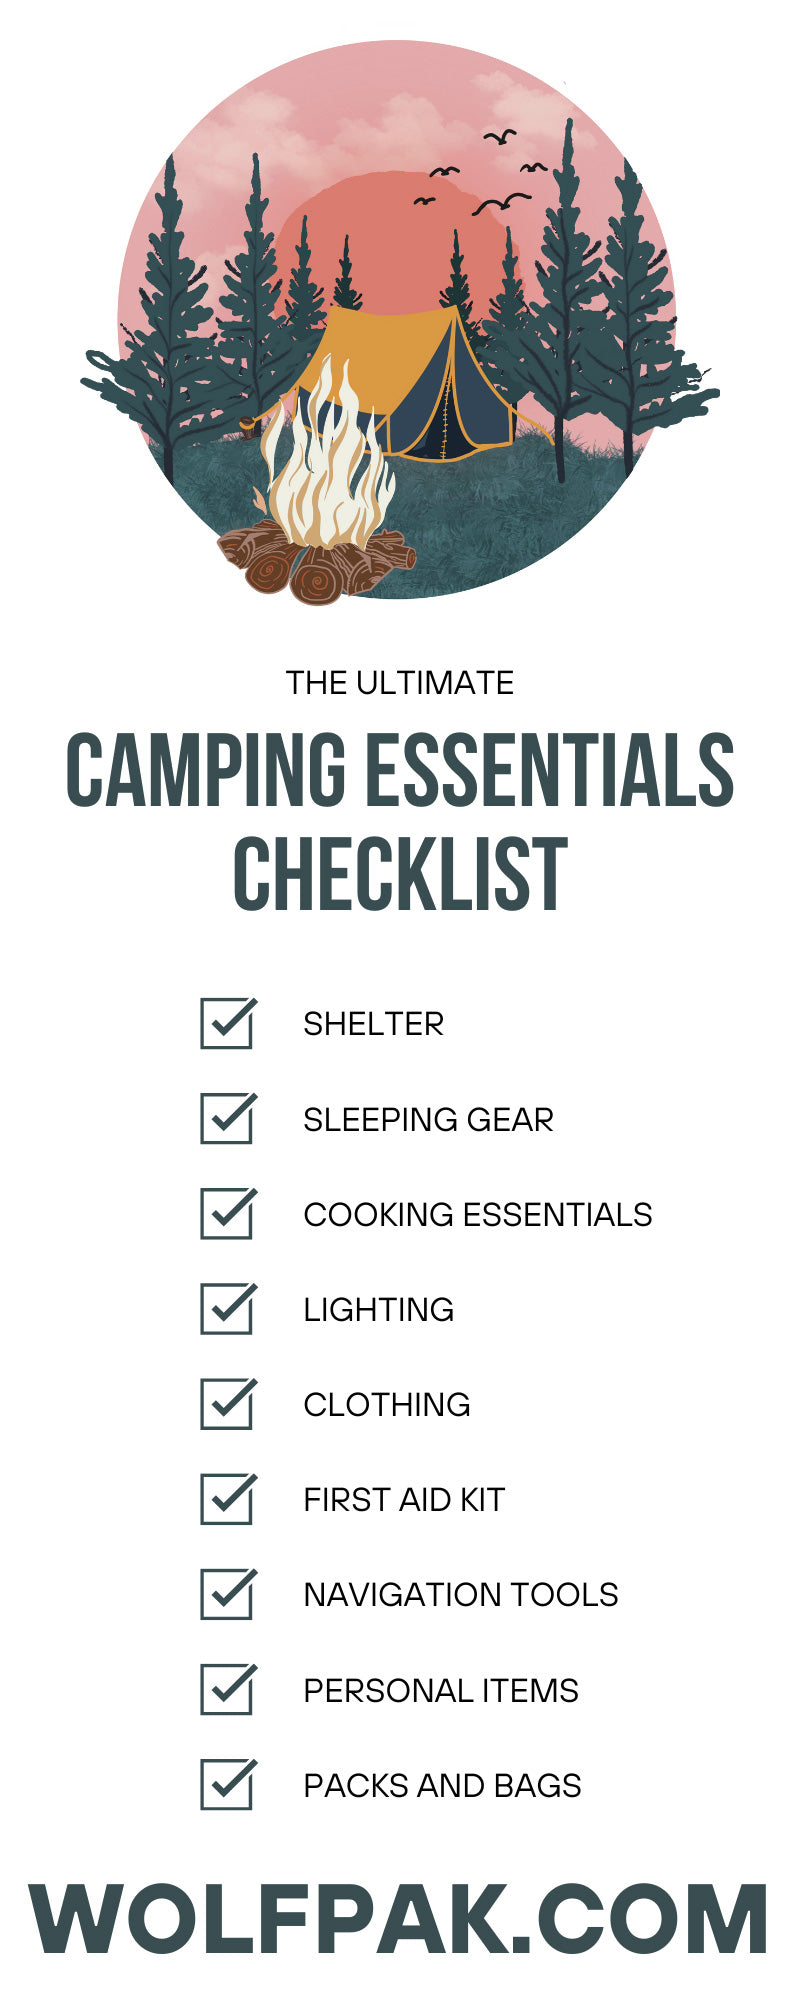 La lista de verificación definitiva de elementos esenciales para acampar